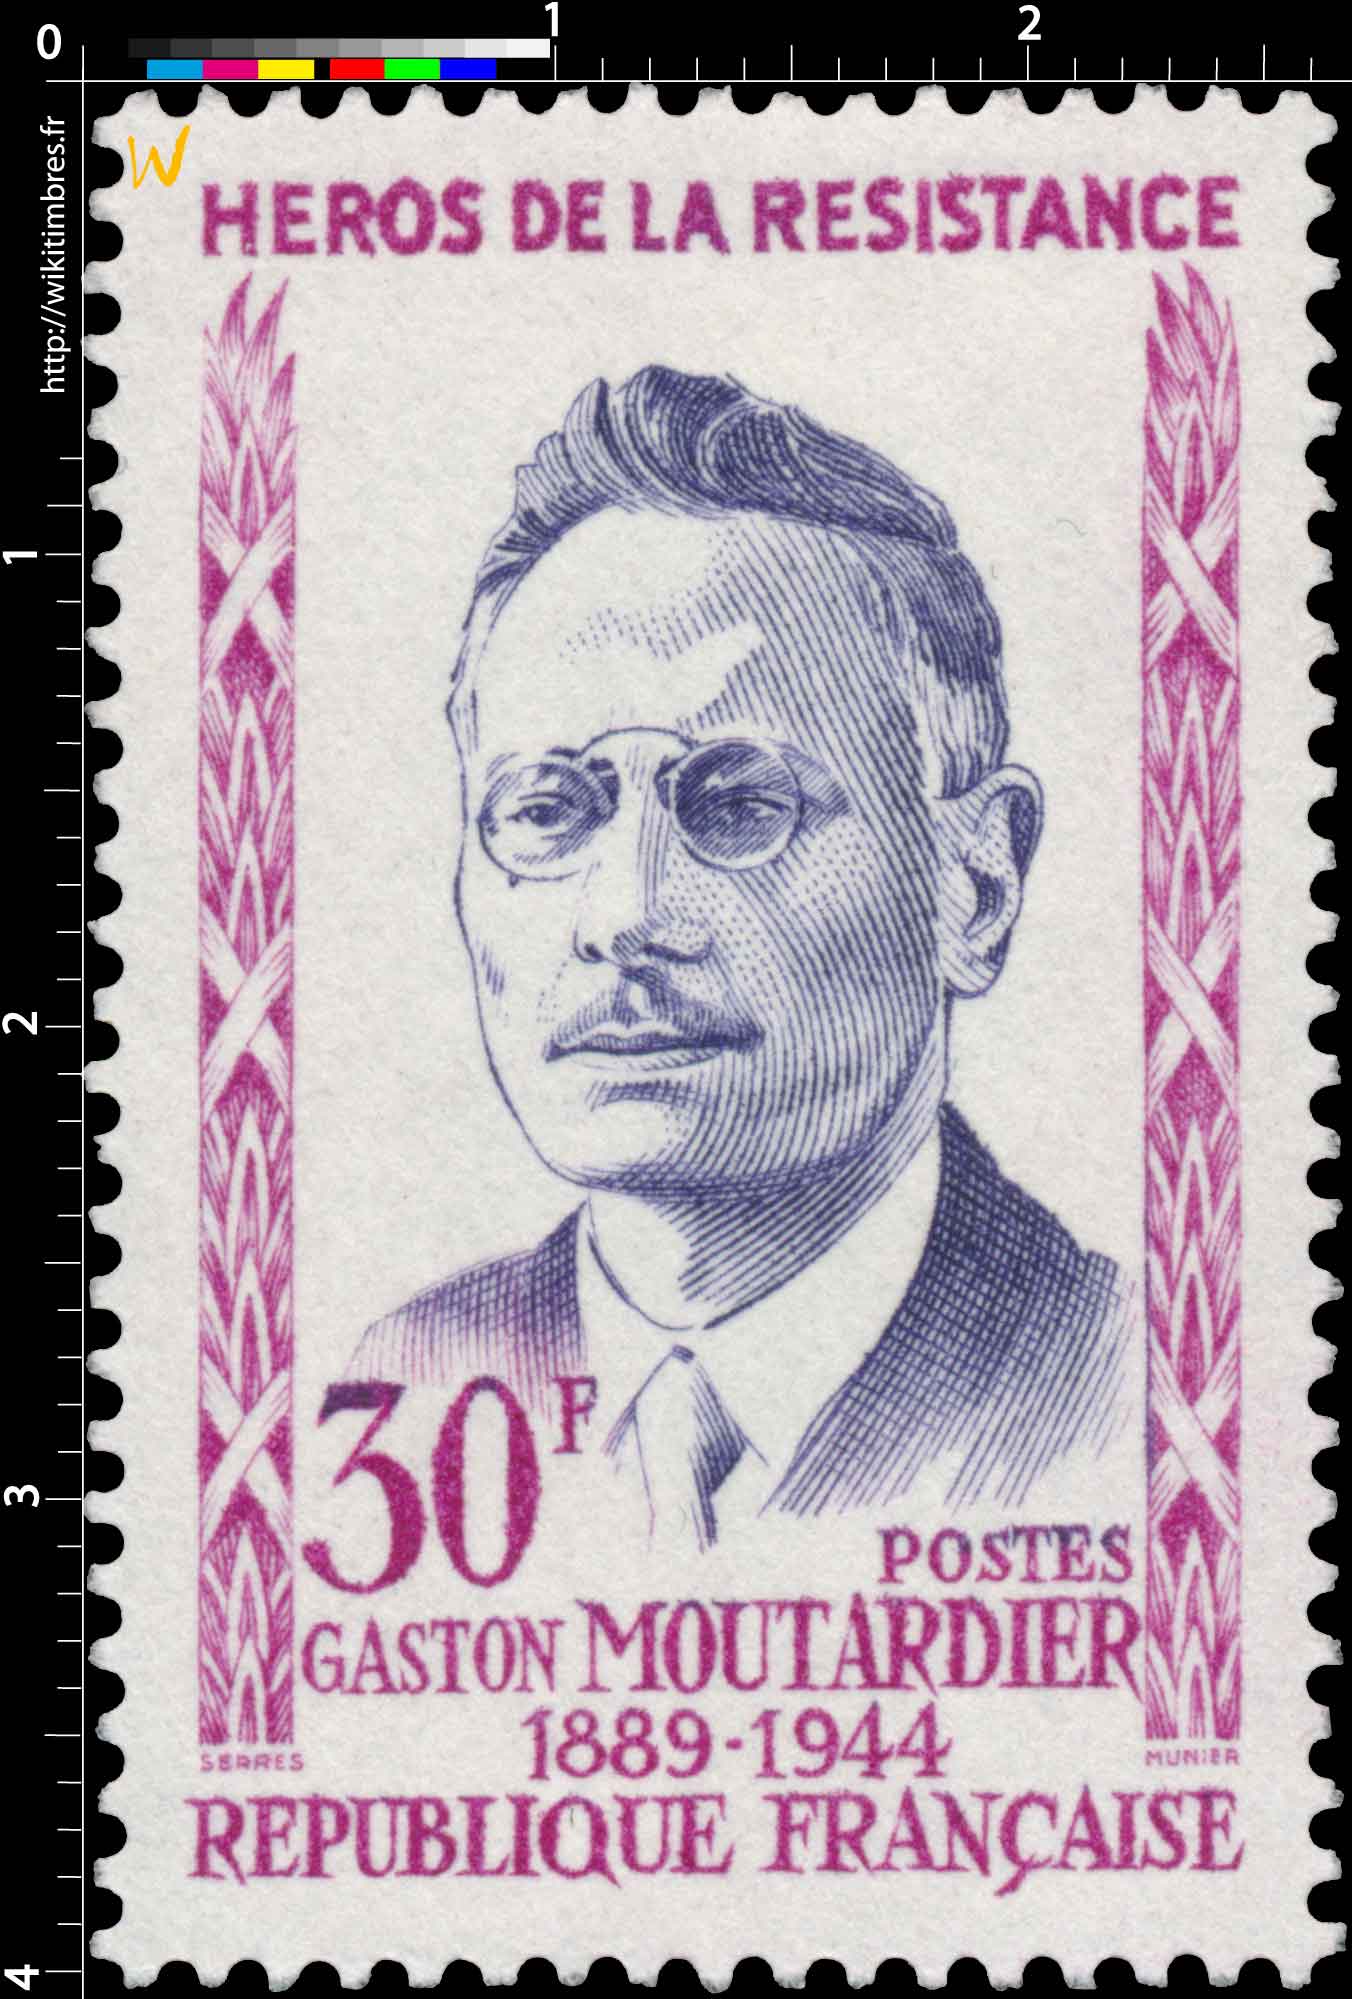 HÉROS DE LA RÉSISTANCE GASTON MOUTARDIER 1889-1944